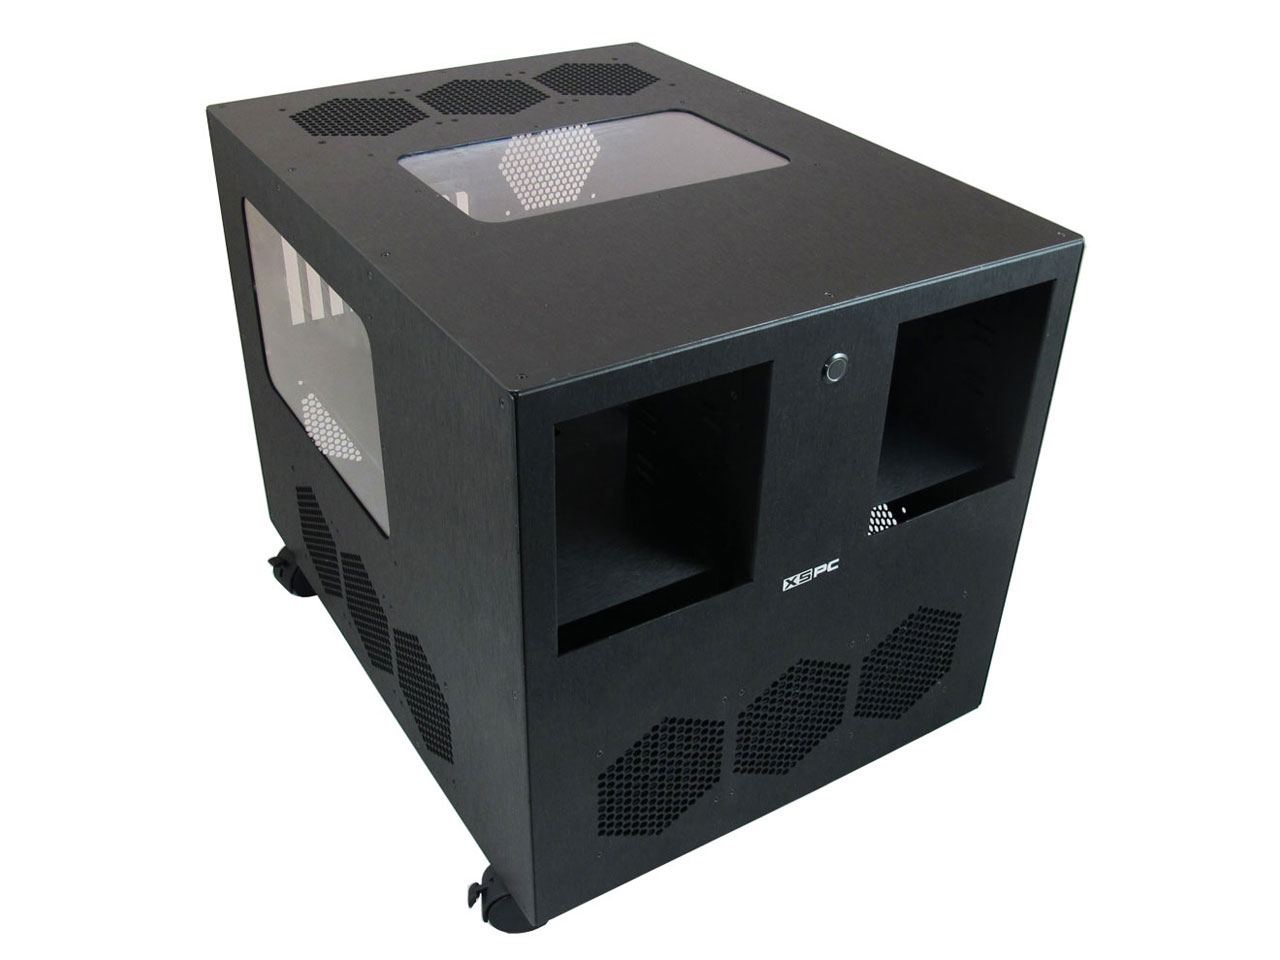 Cube Case с отсеком 5.25. X Cube корпус. Пластиковый чёрный куб с панелью компьютера. Корпус cube